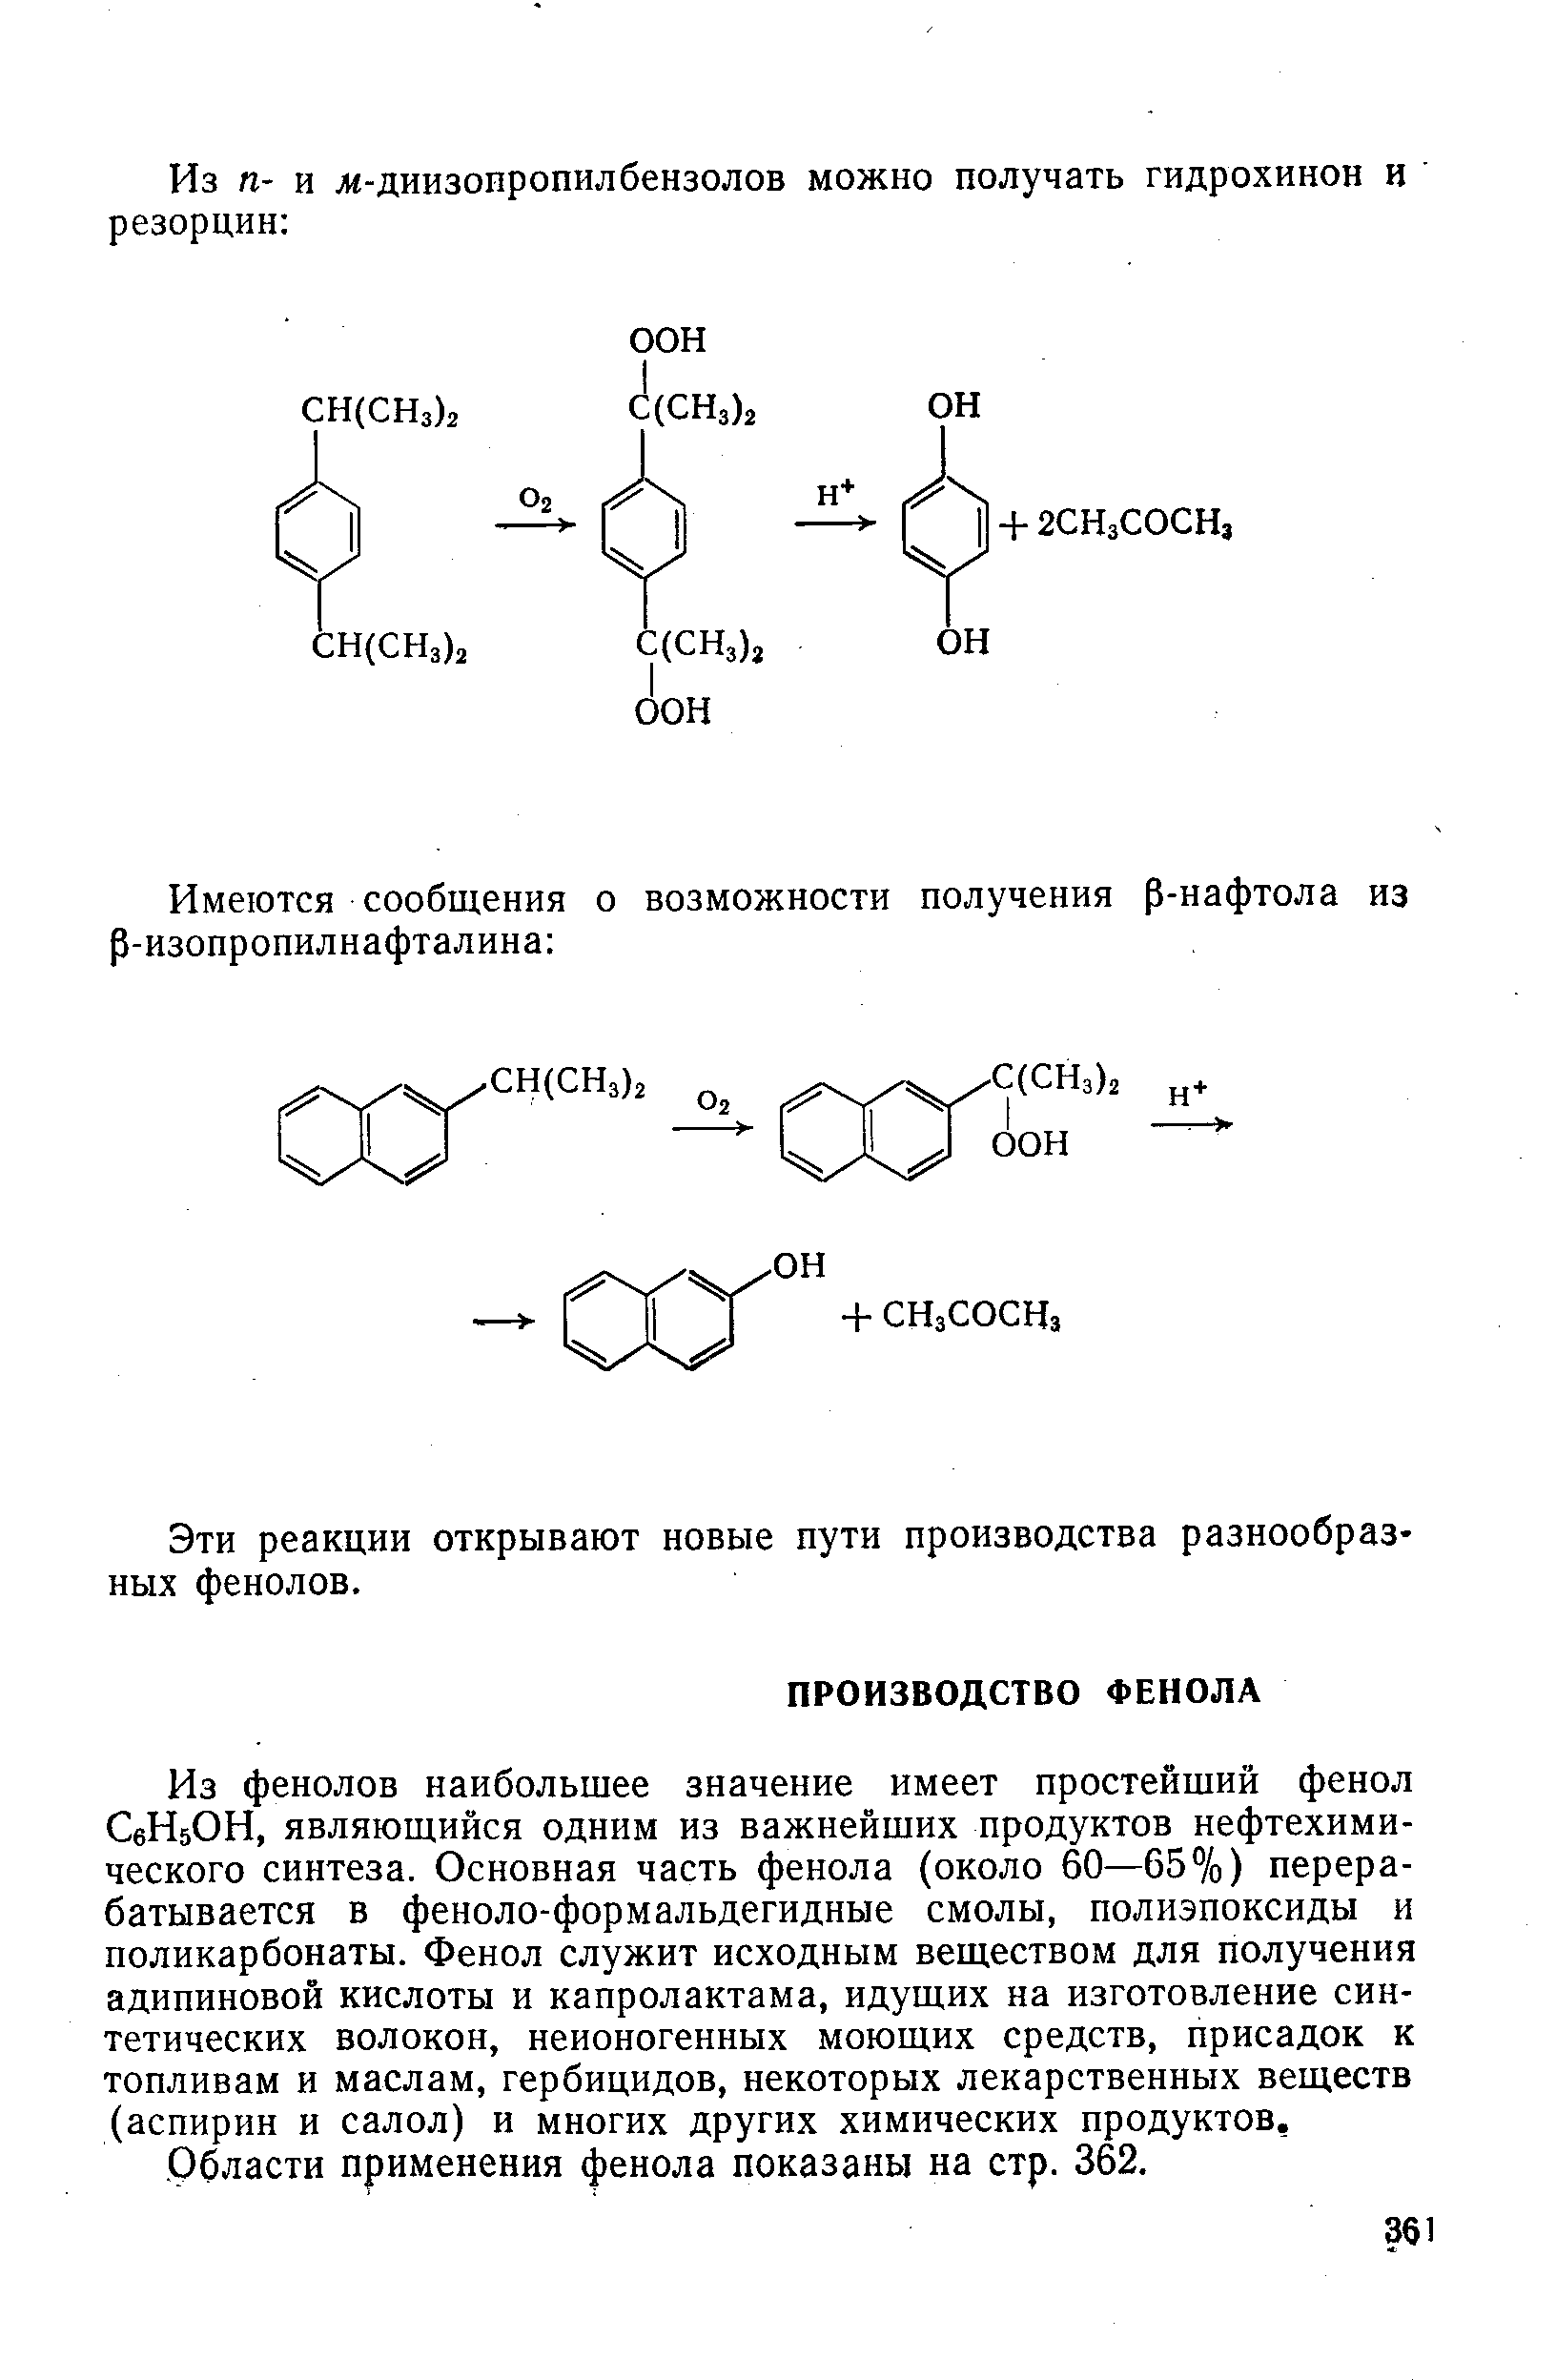 Из фенолов наибольшее значение имеет простейший фенол СбИбОН, являющийся одним из важнейших продуктов нефтехимического синтеза. Основная часть фенола (около 60—65%) перерабатывается в феноло-формальдегидные смолы, полиэпоксиды и поликарбонаты. Фенол служит исходным веществом для получения адипиновой кислоты и капролактама, идущих на изготовление синтетических волокон, неионогенных моющих средств, присадок к топливам и маслам, гербицидов, некоторых лекарственных веществ (аспирин и салол) и многих других химических продуктов. Области применения фенола показаны на стр. 362.